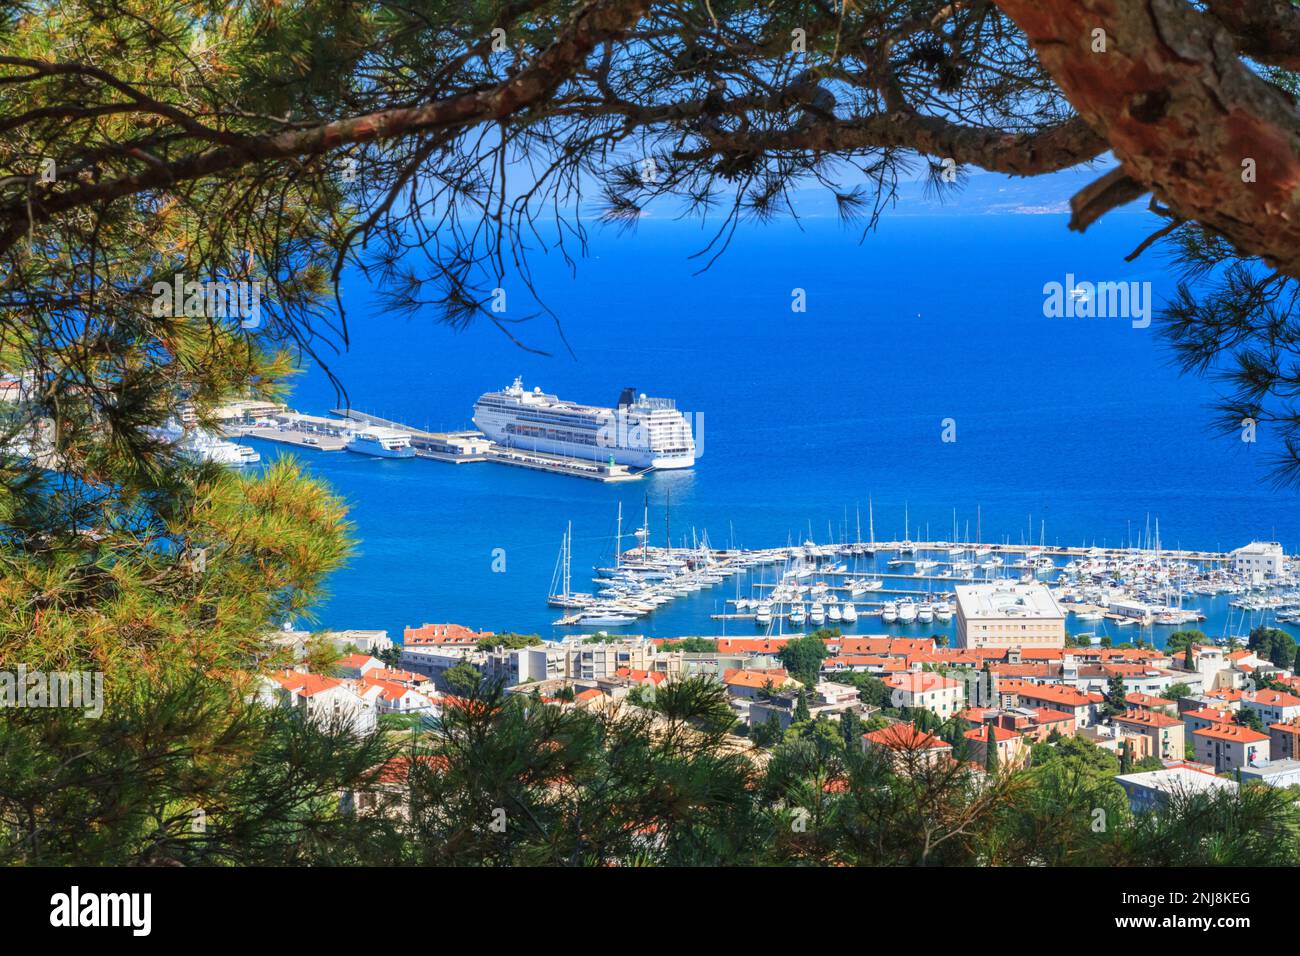 Paesaggio estivo costiero - vista dall'alto del porto della città e del porto turistico di Spalato, la costa adriatica della Croazia Foto Stock